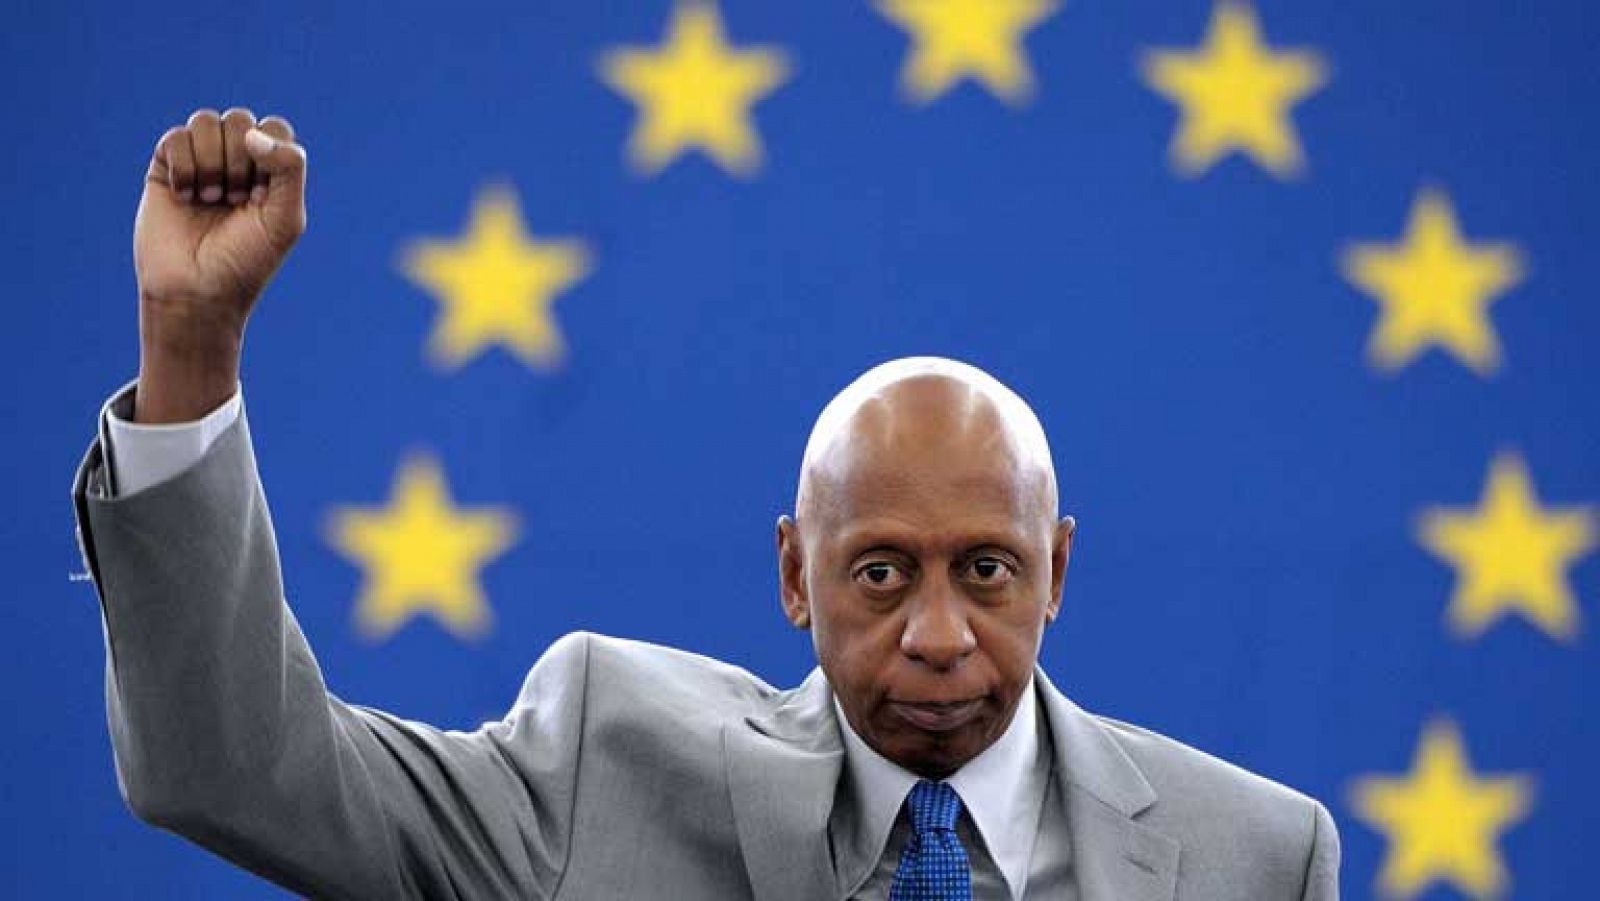 El disidente cubano Guillermo Fariñas recoge el Premio Sajarov en Bruselas